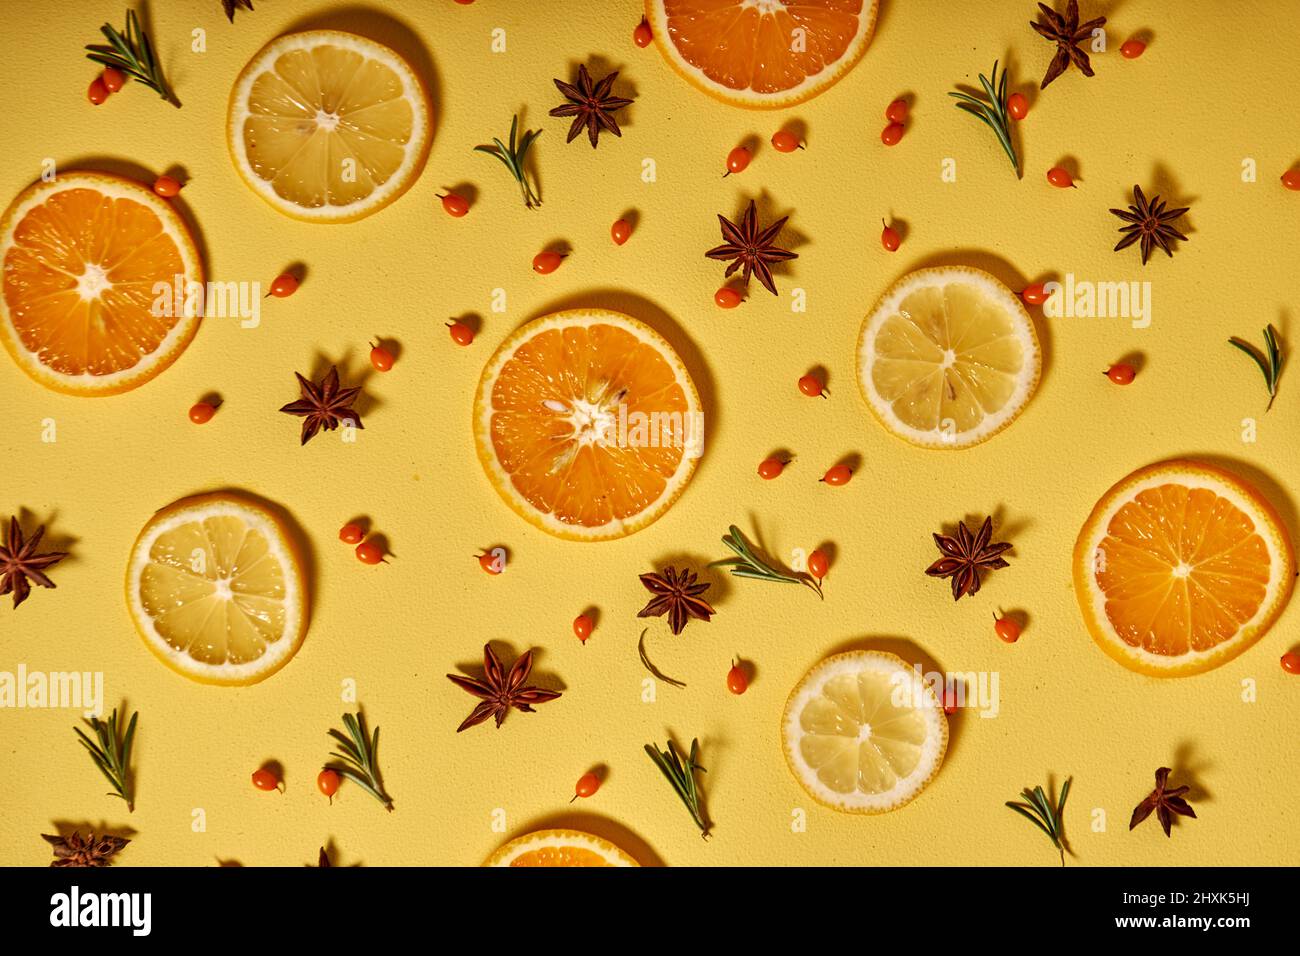 juego de mini rodajas de limón fresco y naranja aisladas sobre fondo amarillo. Vista superior. Espacio de copia. Frutas tropicales, hermosa imagen Foto de stock